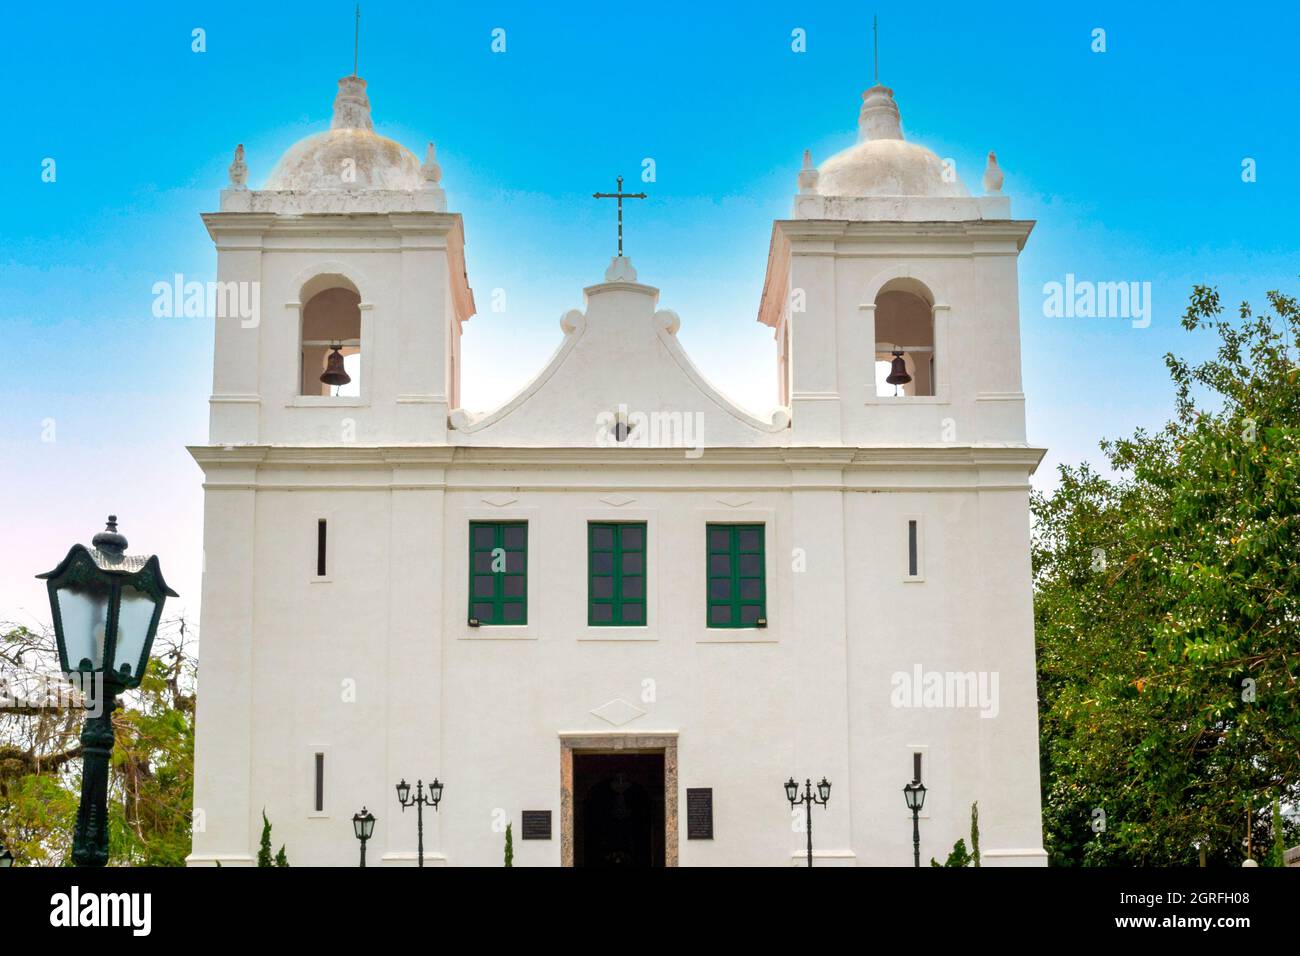 Vue extérieure et façade de la paroisse de Saint-Sébastien à Itaipu, État de Rio de Janeiro, Brésil. L'église catholique a un style colonial architectural Banque D'Images